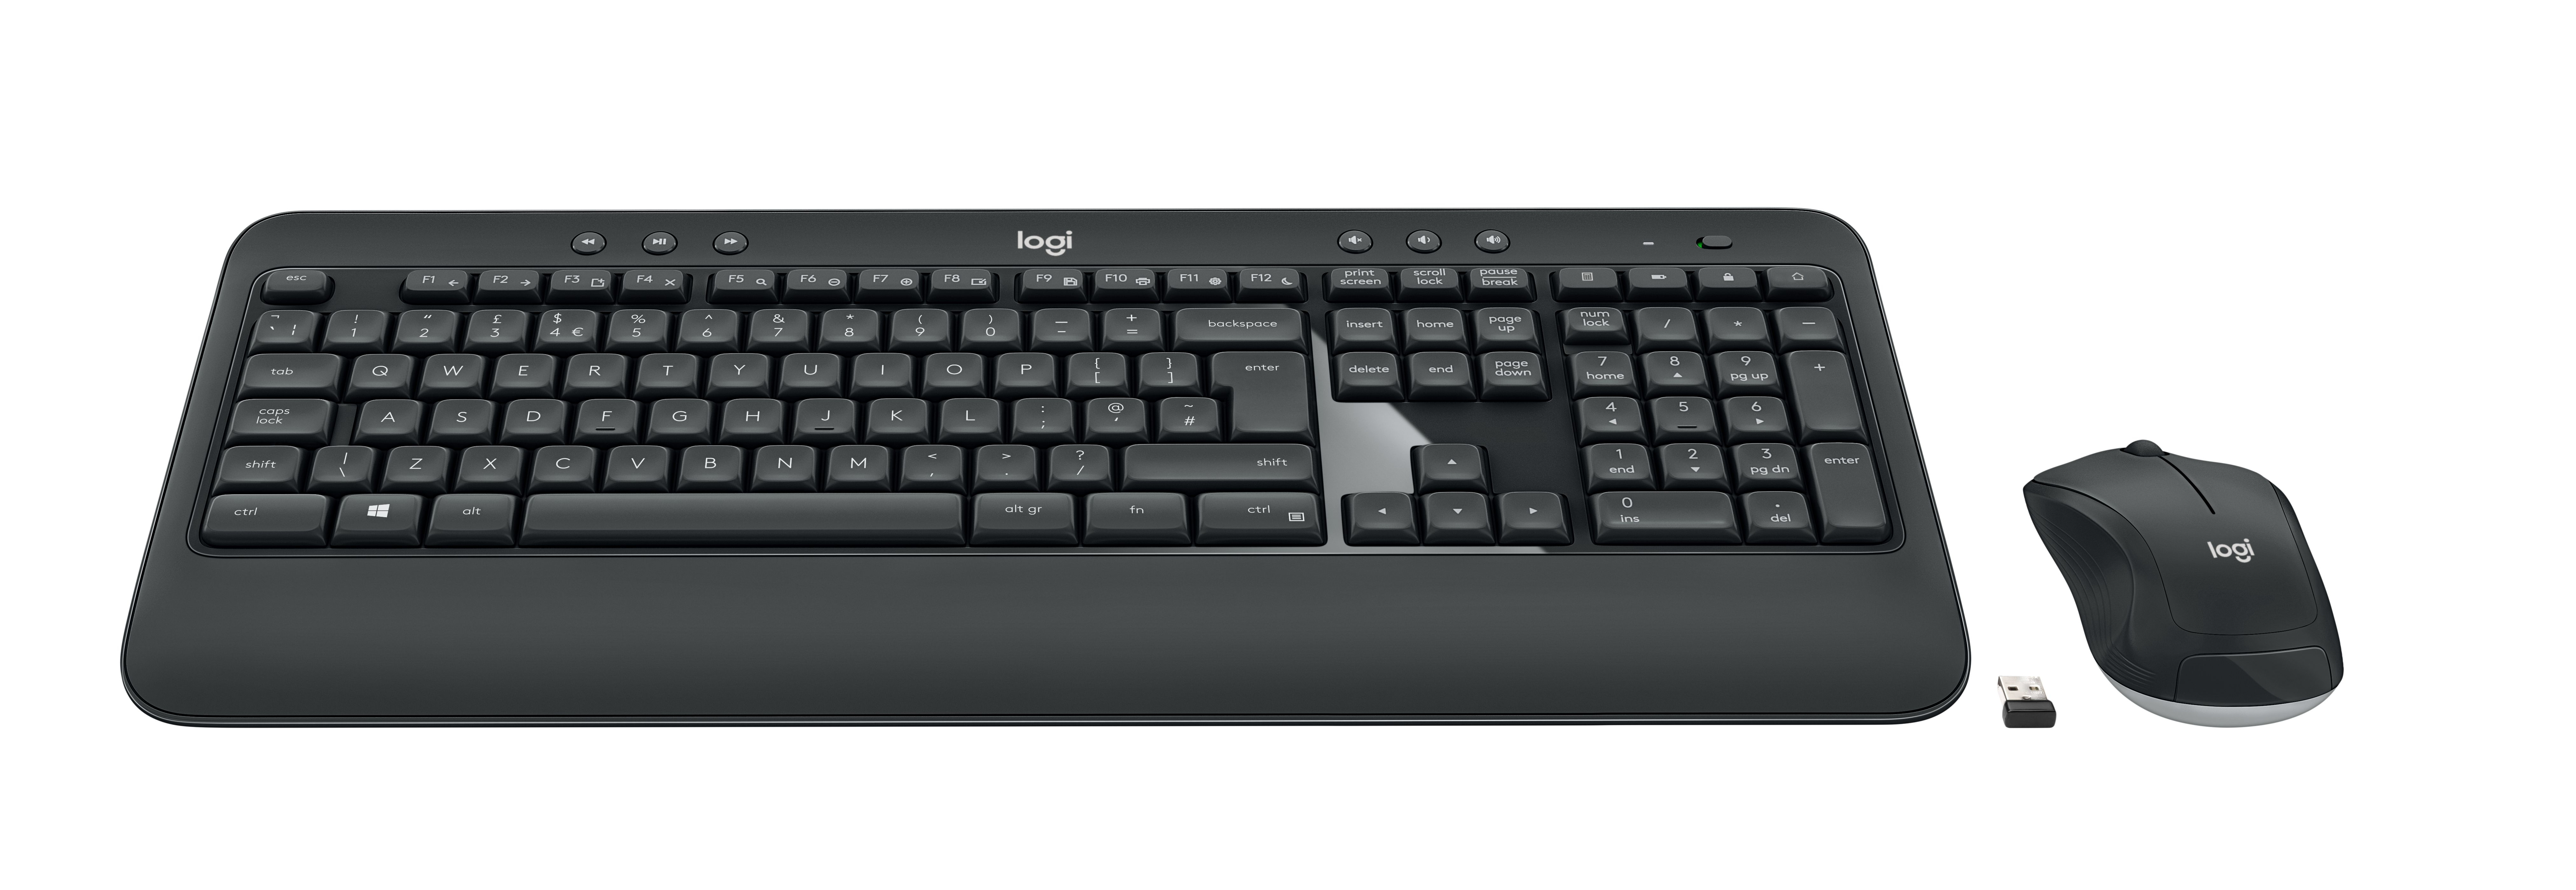 Logitech MK540 ADVANCED - bezdrôtová klávesnica a myš, kombo, CZ/SK